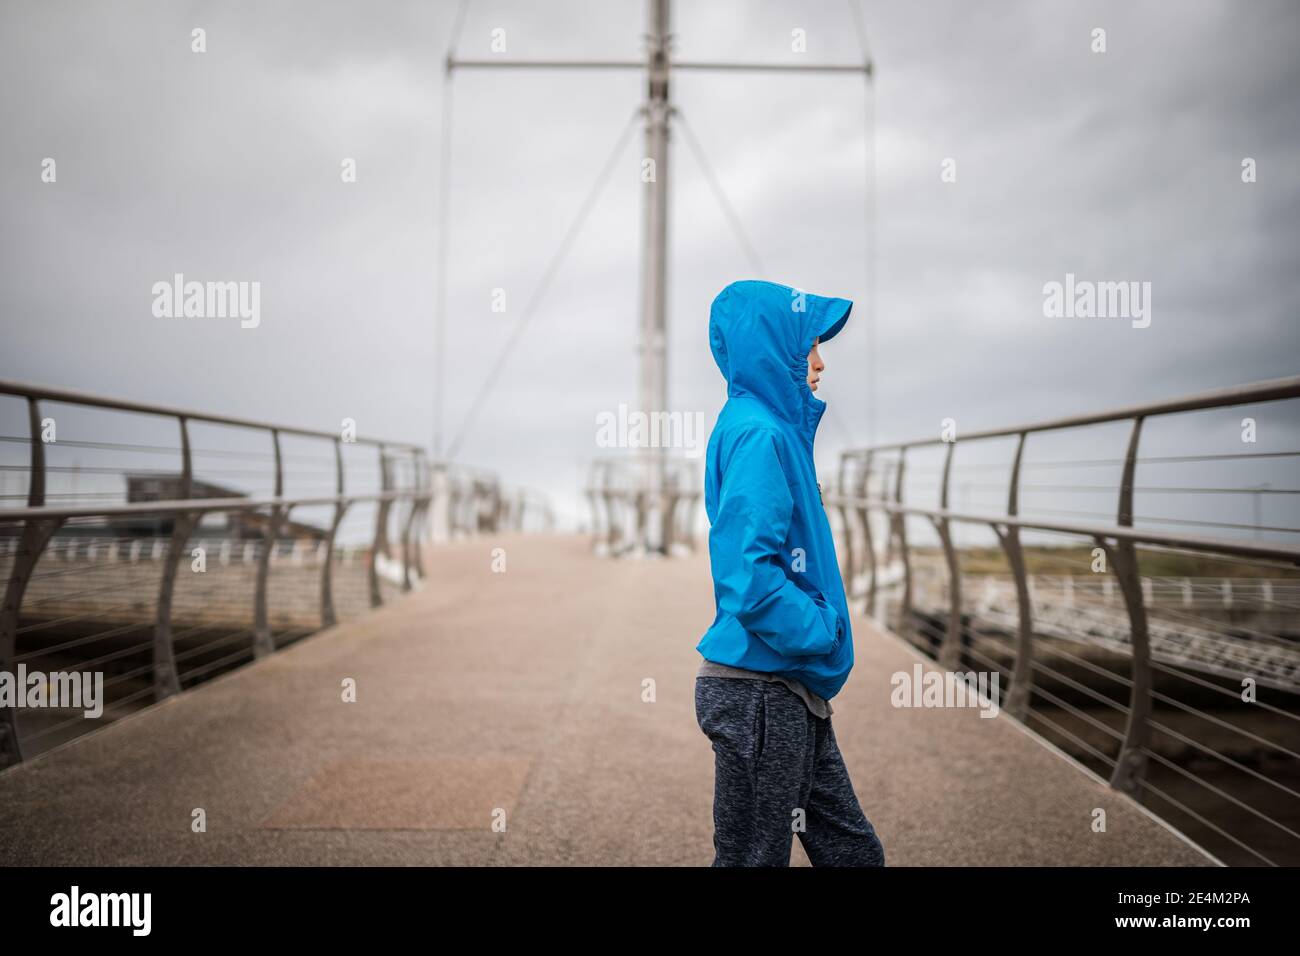 Junge in blauem Mantel mit Kapuze auf Brücke suchen Weg von der Kamera Seite Regenmantel Metall Geländer Boot Segel Hintergrund Hafen Ozean Hände in Taschen kalt Stockfoto